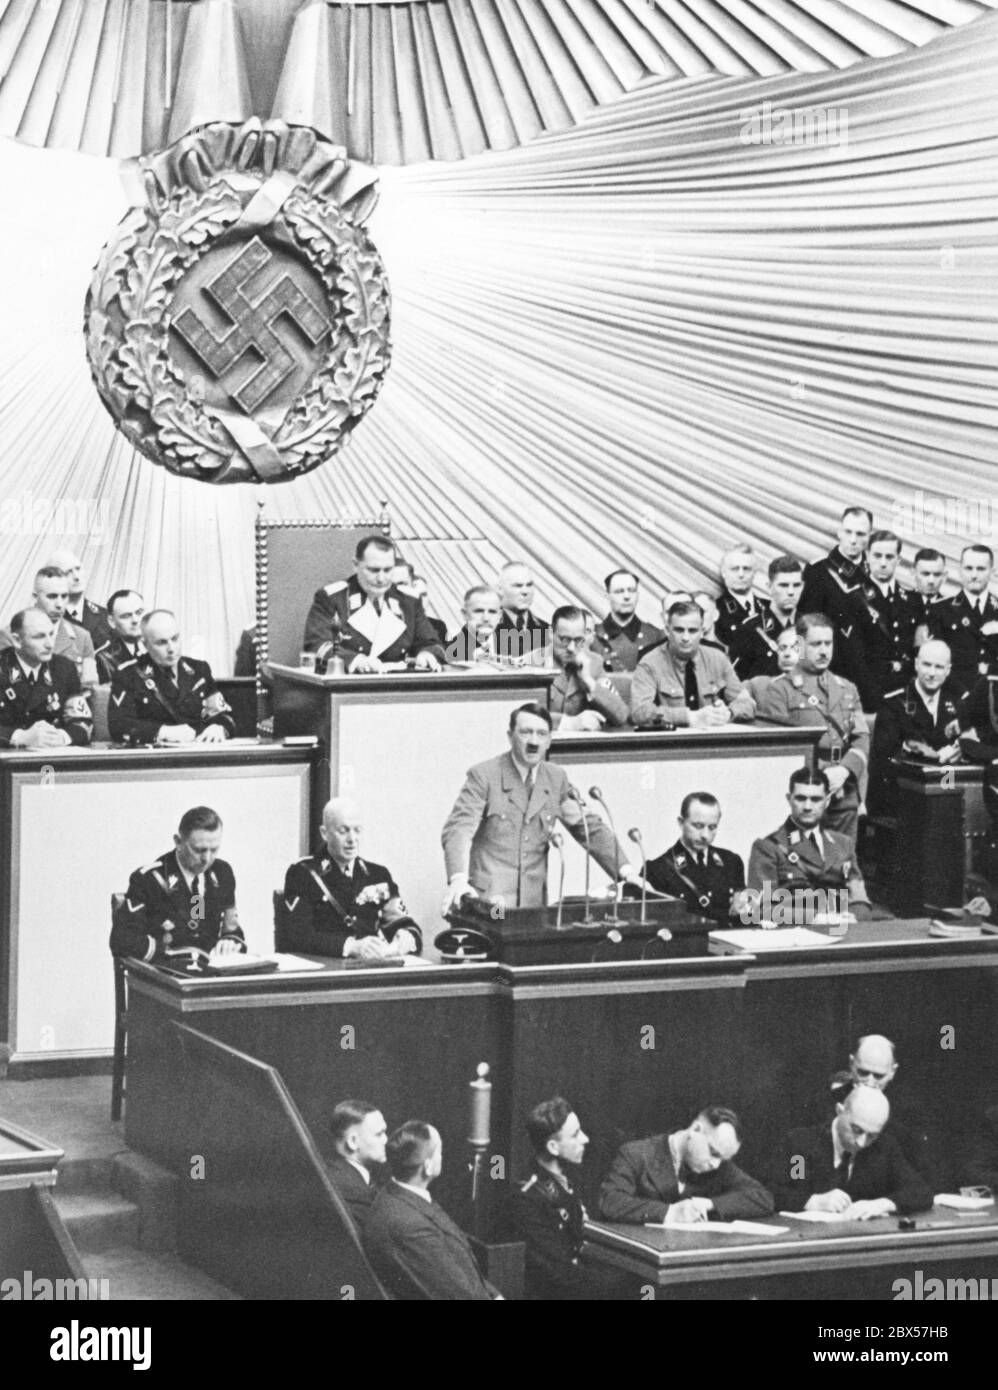 Adolf Hitler während seiner Rede bei einer Reichstagssitzung in der Berliner Kroll-Oper. Hinter ihm sitzt Hermann Göring am Schreibtisch des Reichstagspräsidenten. Stockfoto